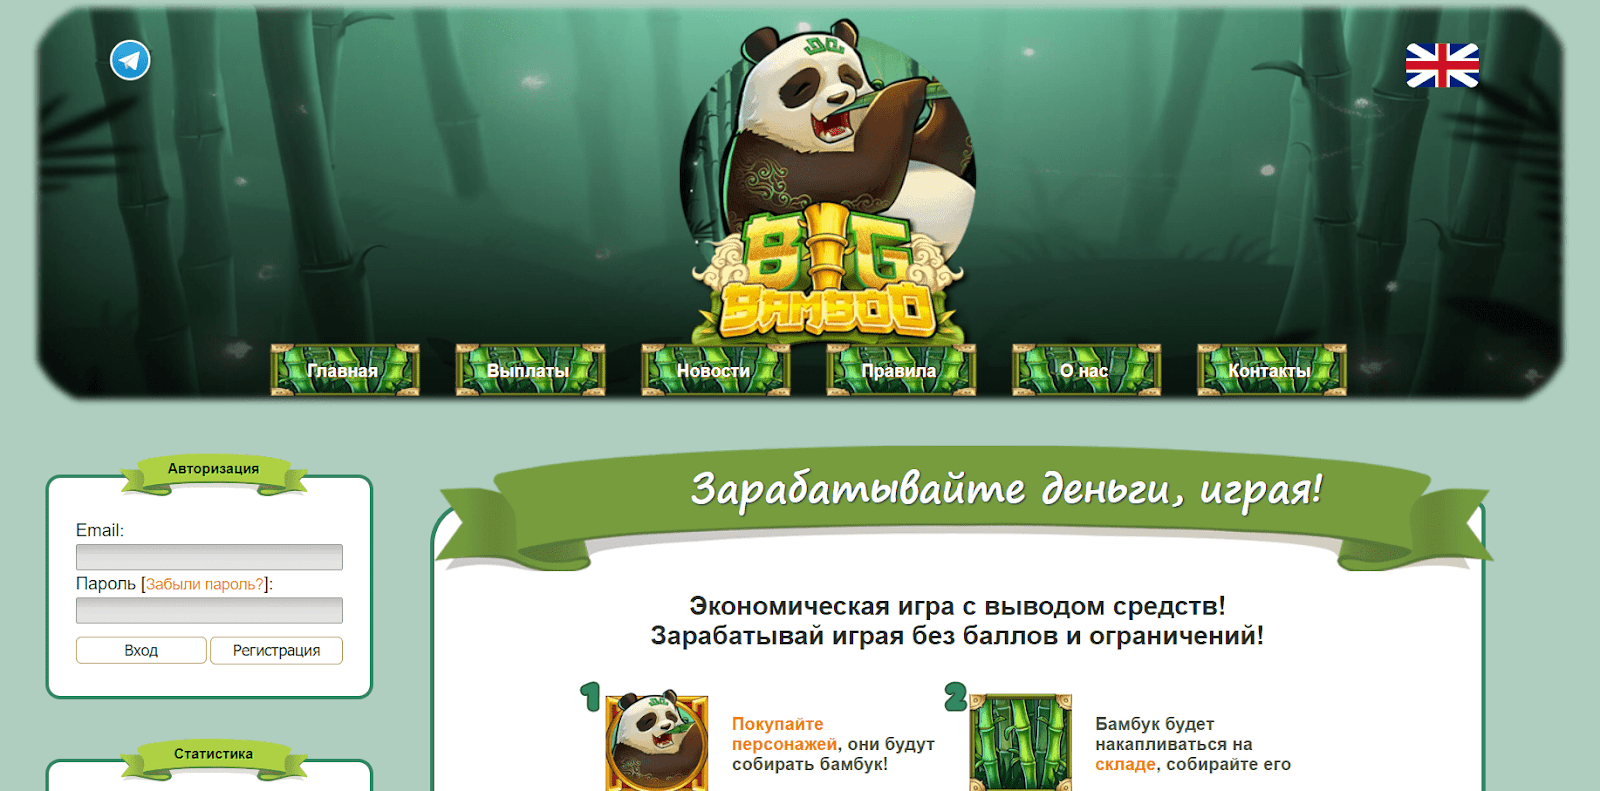 Биг бамбу big bambooo com. Big Bamboo слот. Bambook games. Играть в бамбуки. Игры в которых можно заработать реальные деньги 2023.